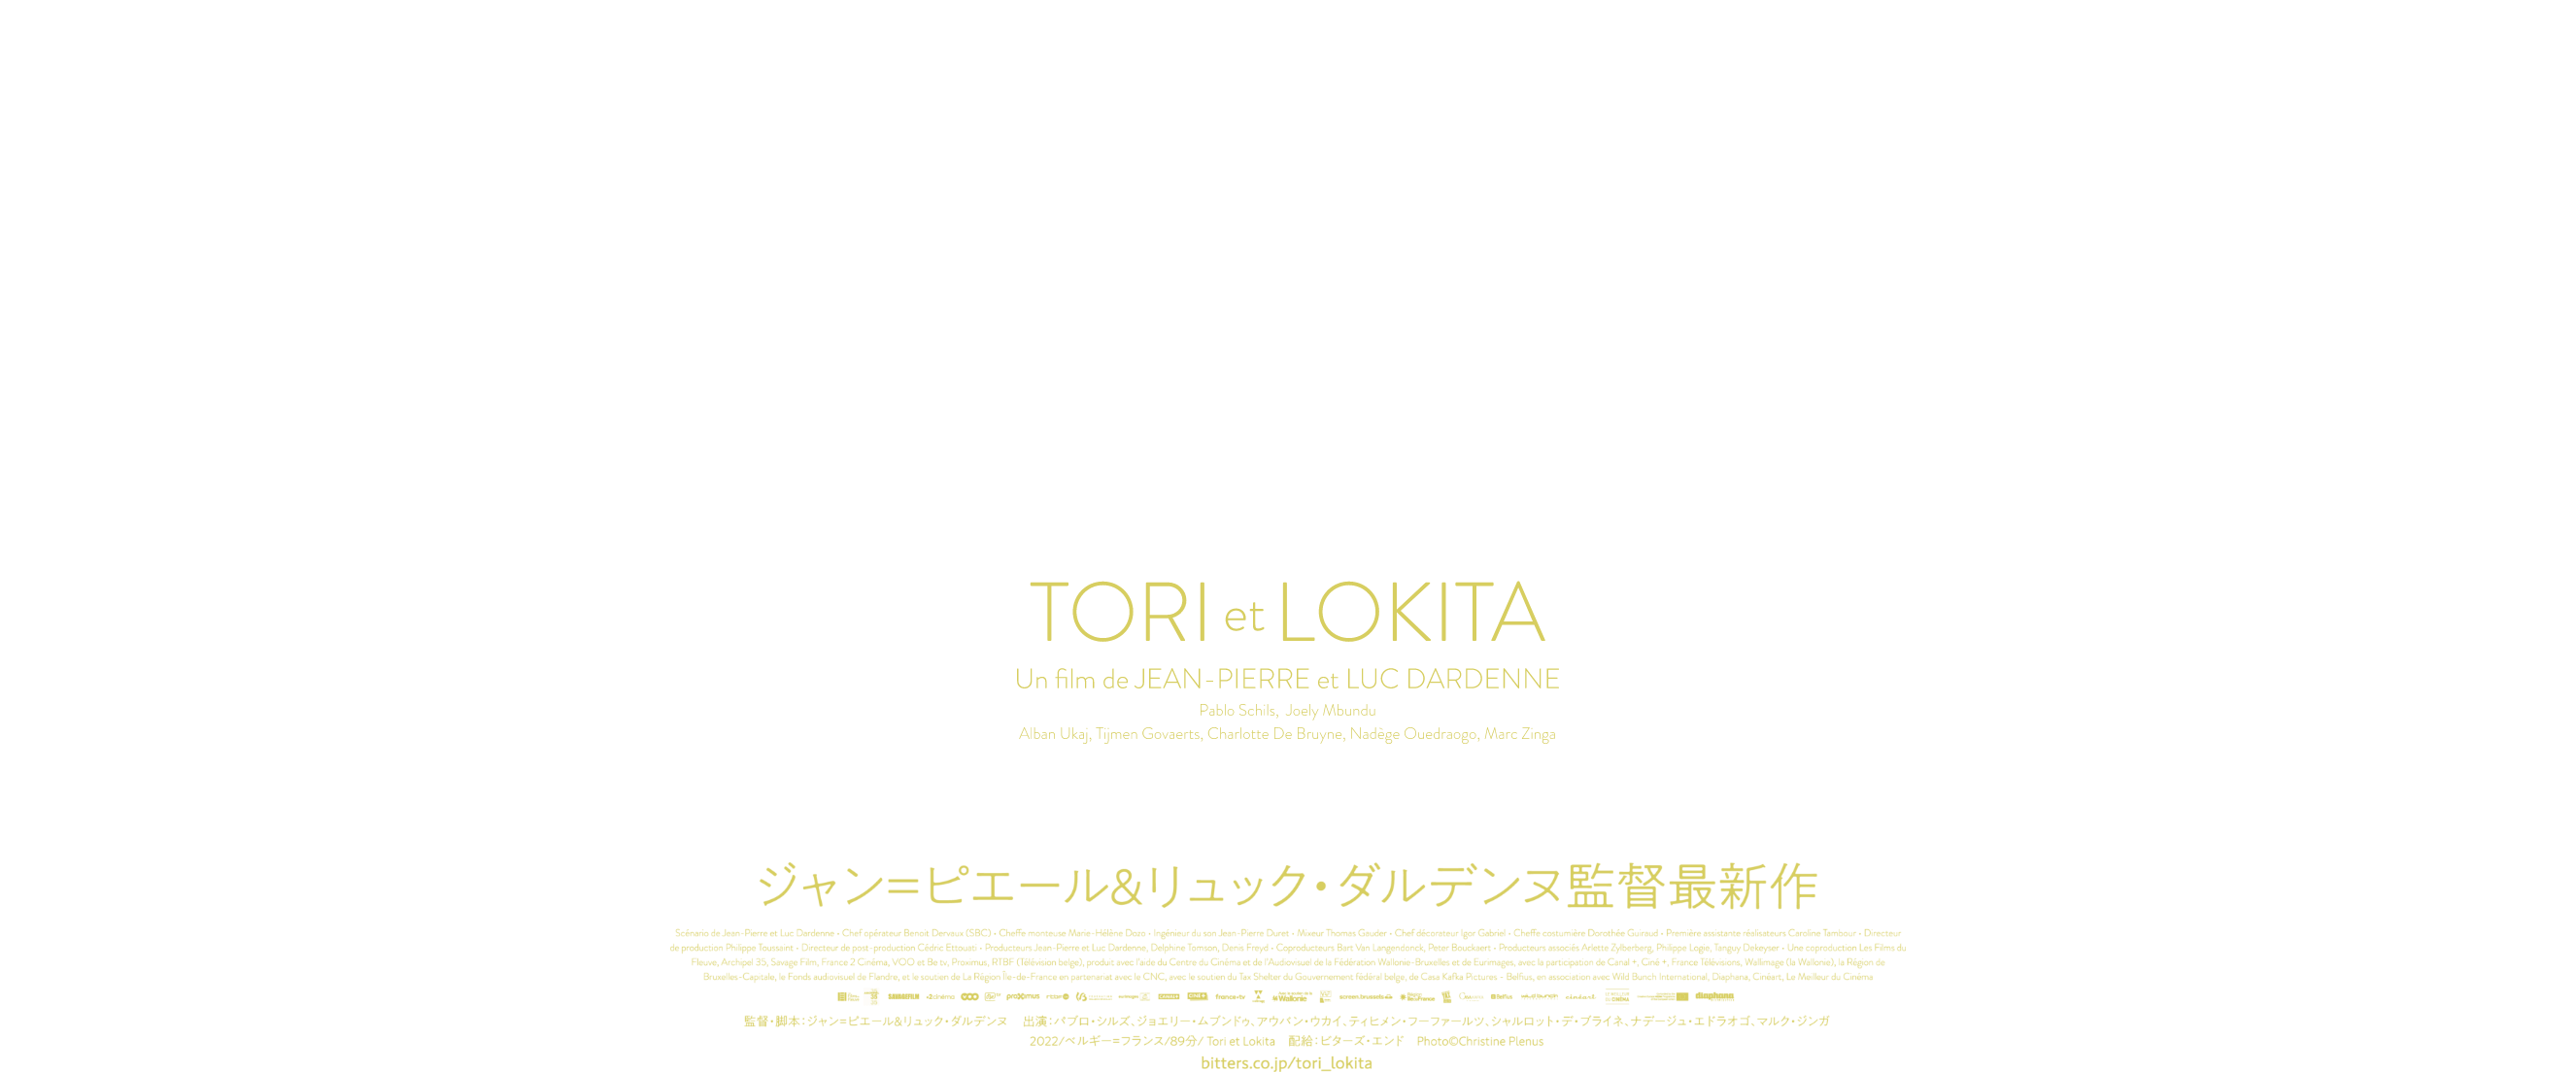 ダルデンヌ兄弟監督最新作『トリとロキタ』3月31日（金）公開